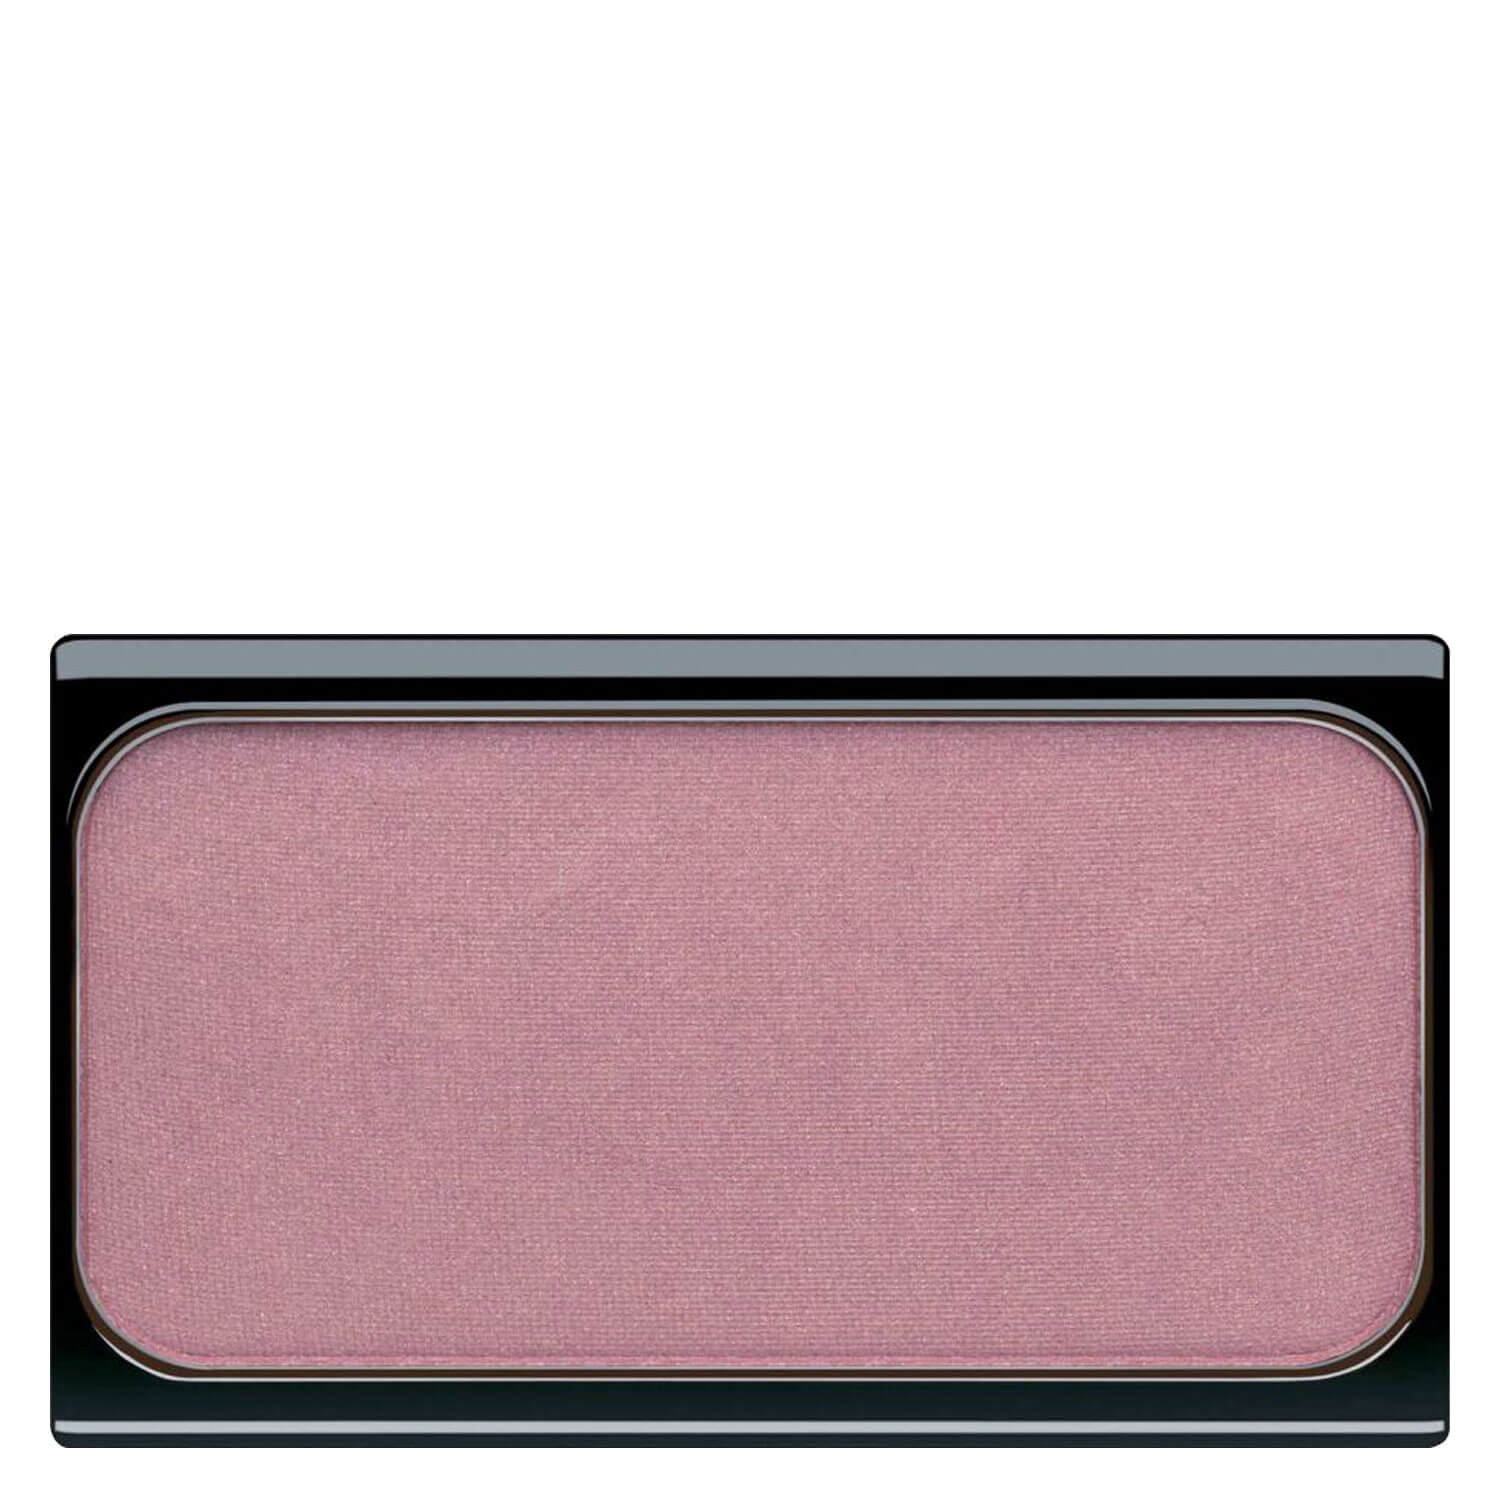 Produktbild von Artdeco Blusher - Deep Pink Blush 23